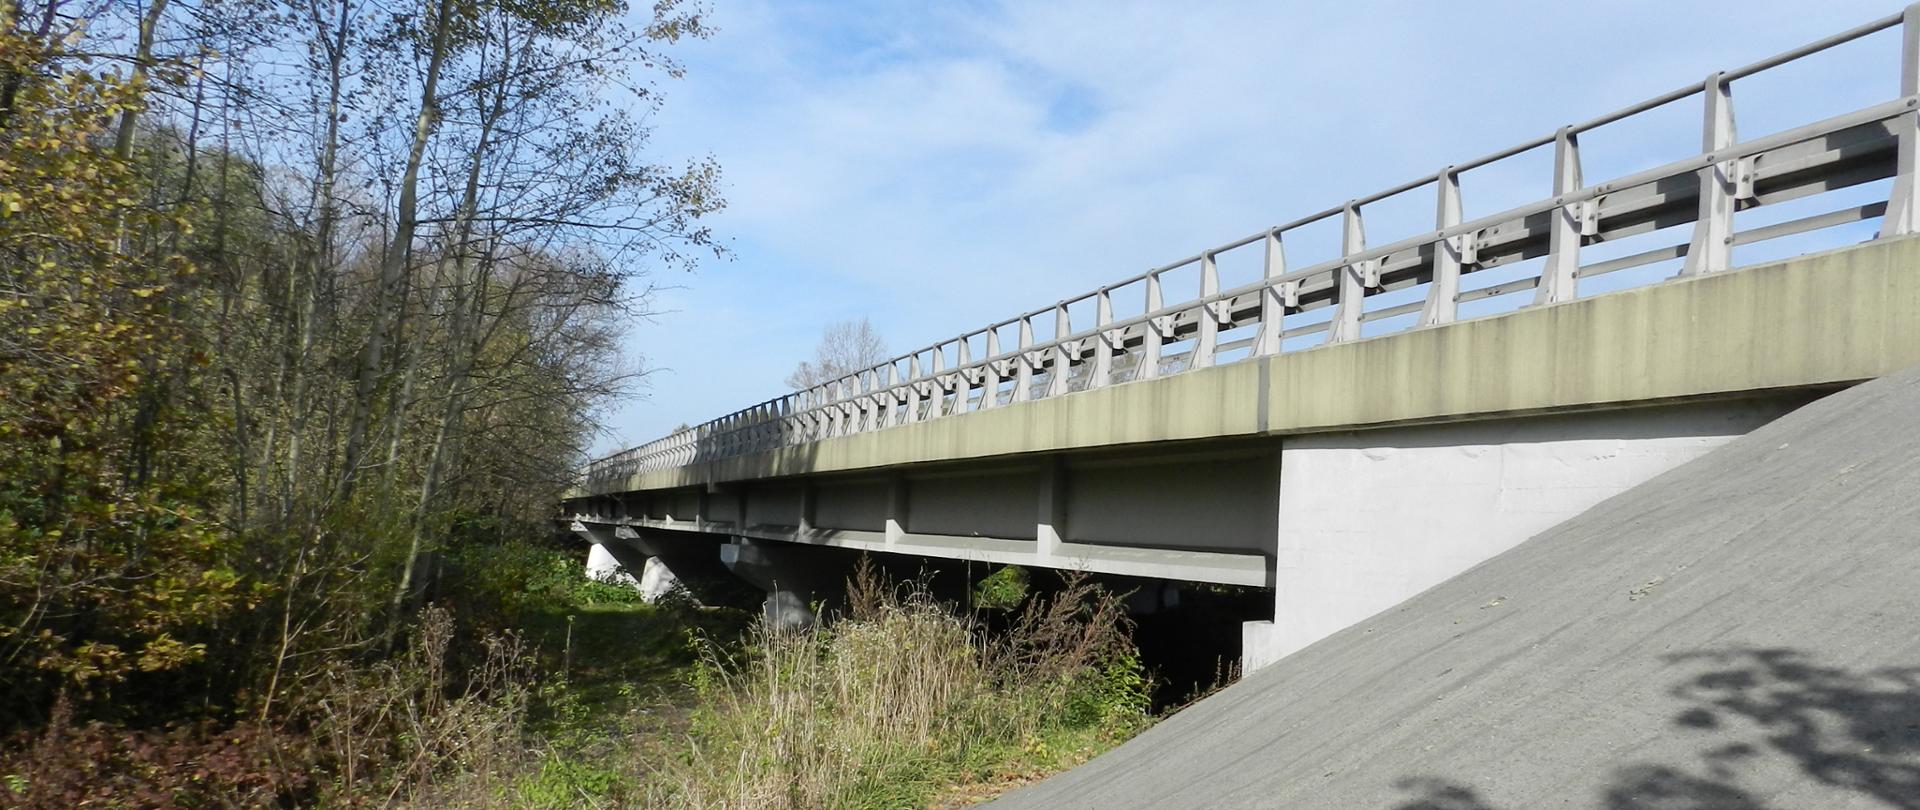 Fotografia mostu z poziomu terenu. W lewej części fotografii widoczna zieleń przydrożna. Po prawej stronie widoczny przyczółek mostu wraz z płytą pomostową i filarami. 